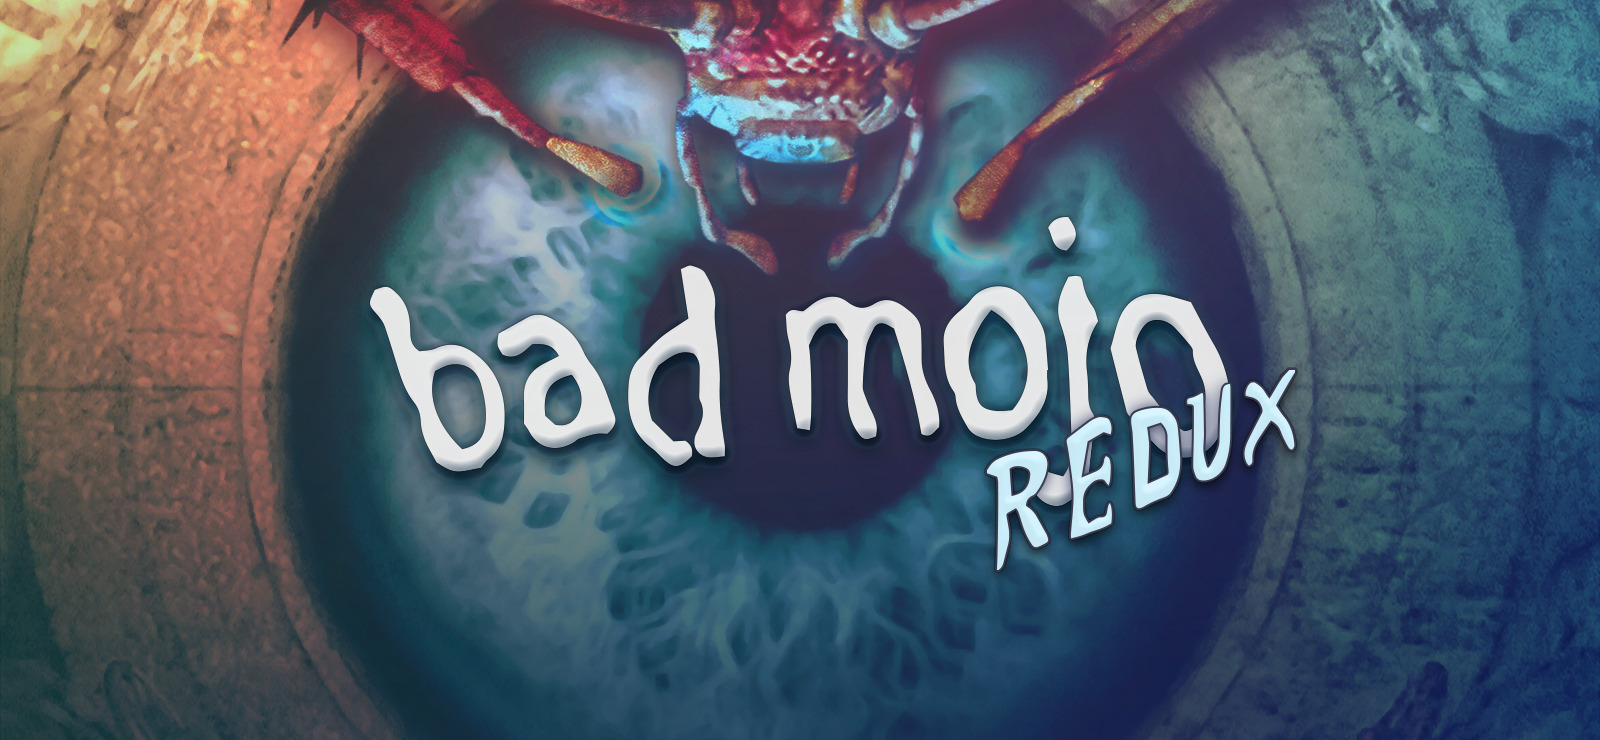 75% Bad Mojo Redux on GOG.com